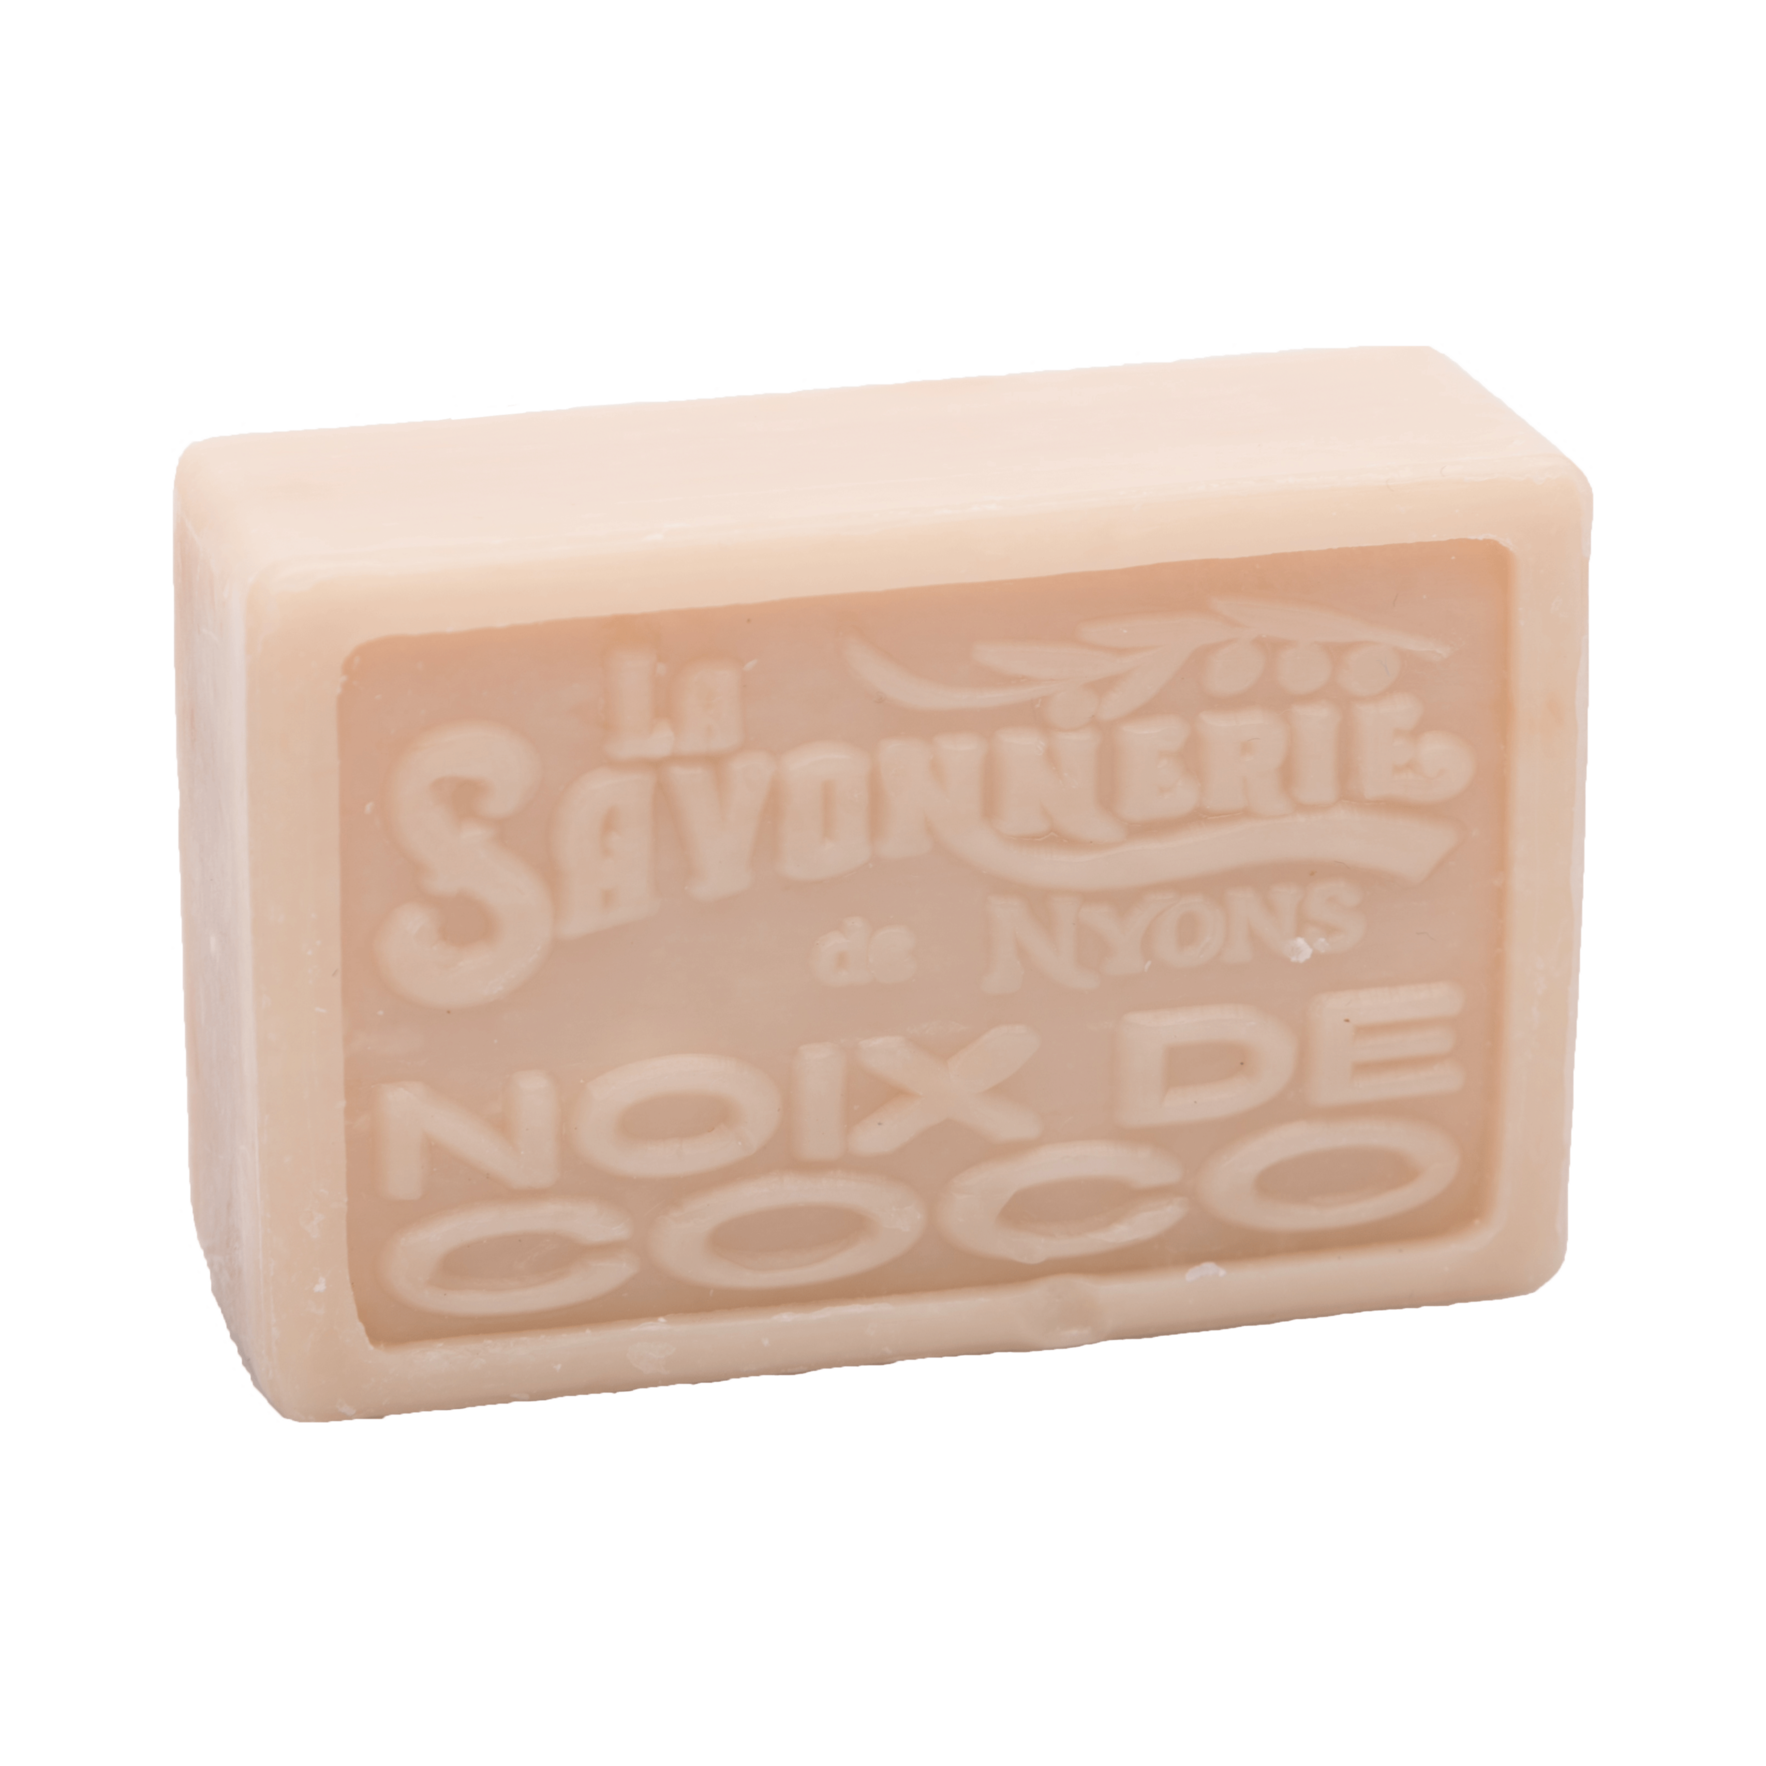 Beige bar of soap that reads La Savonnerie de Nyons Noix de Coco.